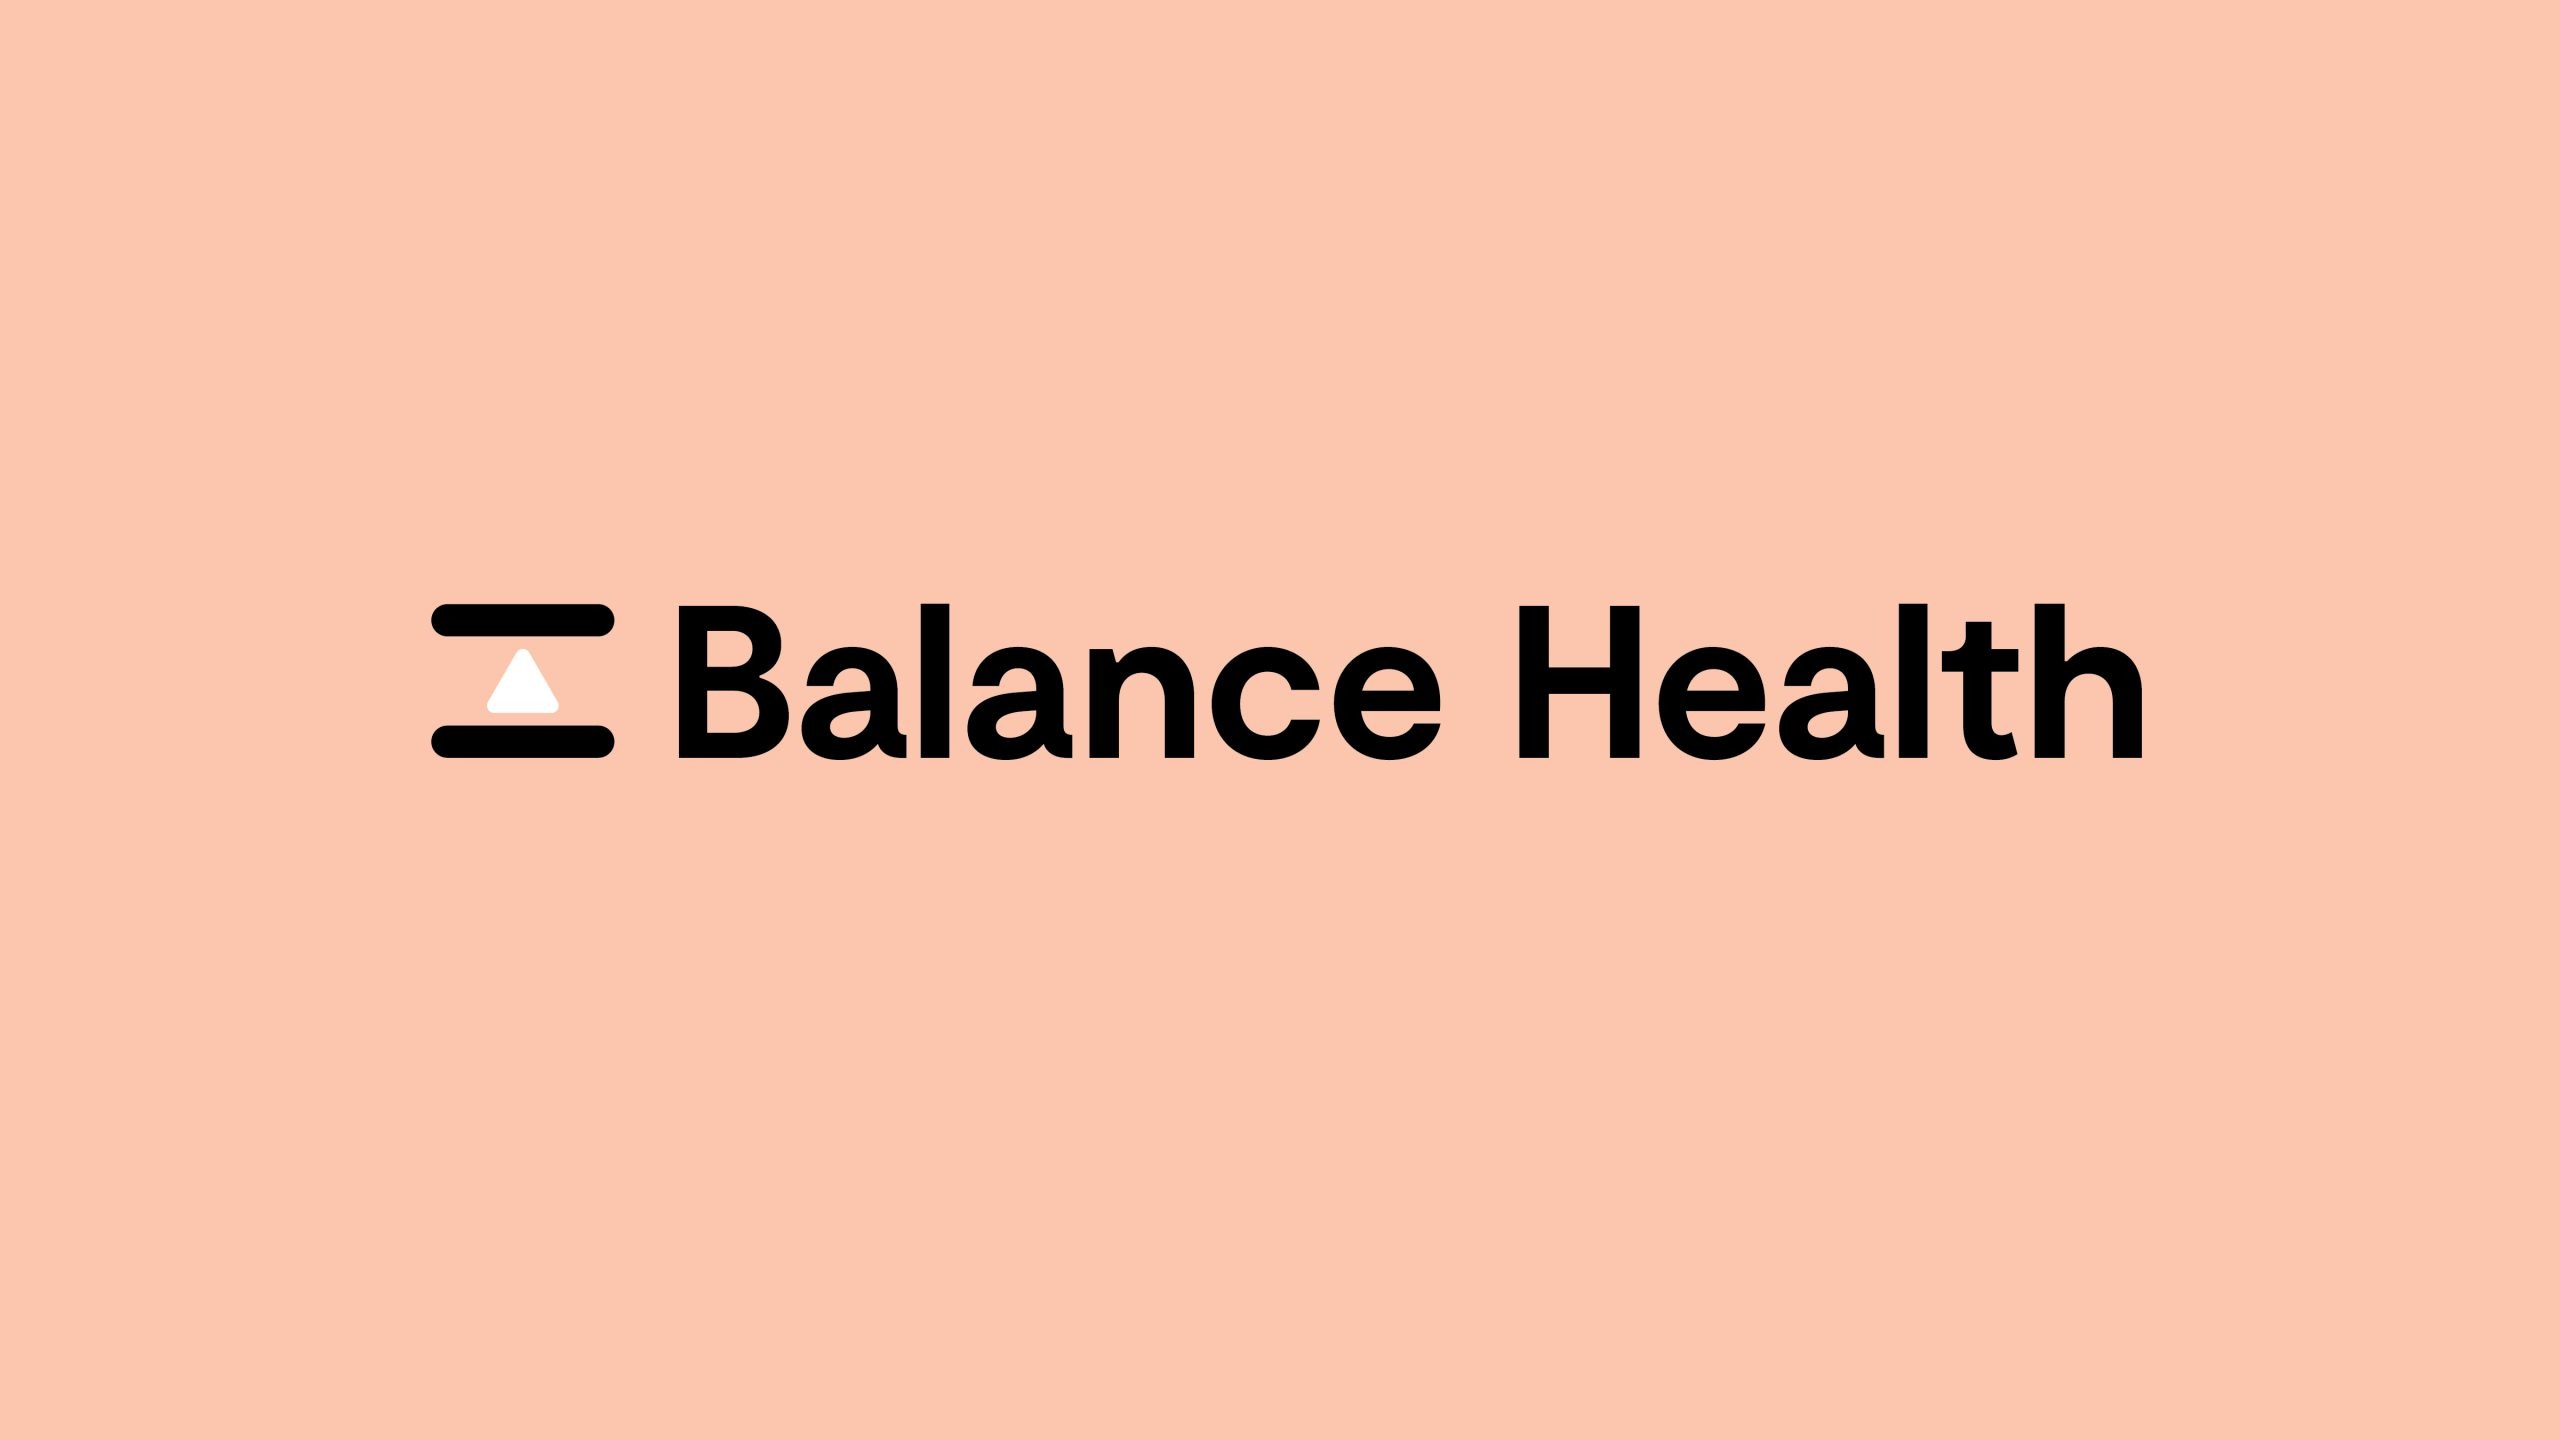 Balance Health